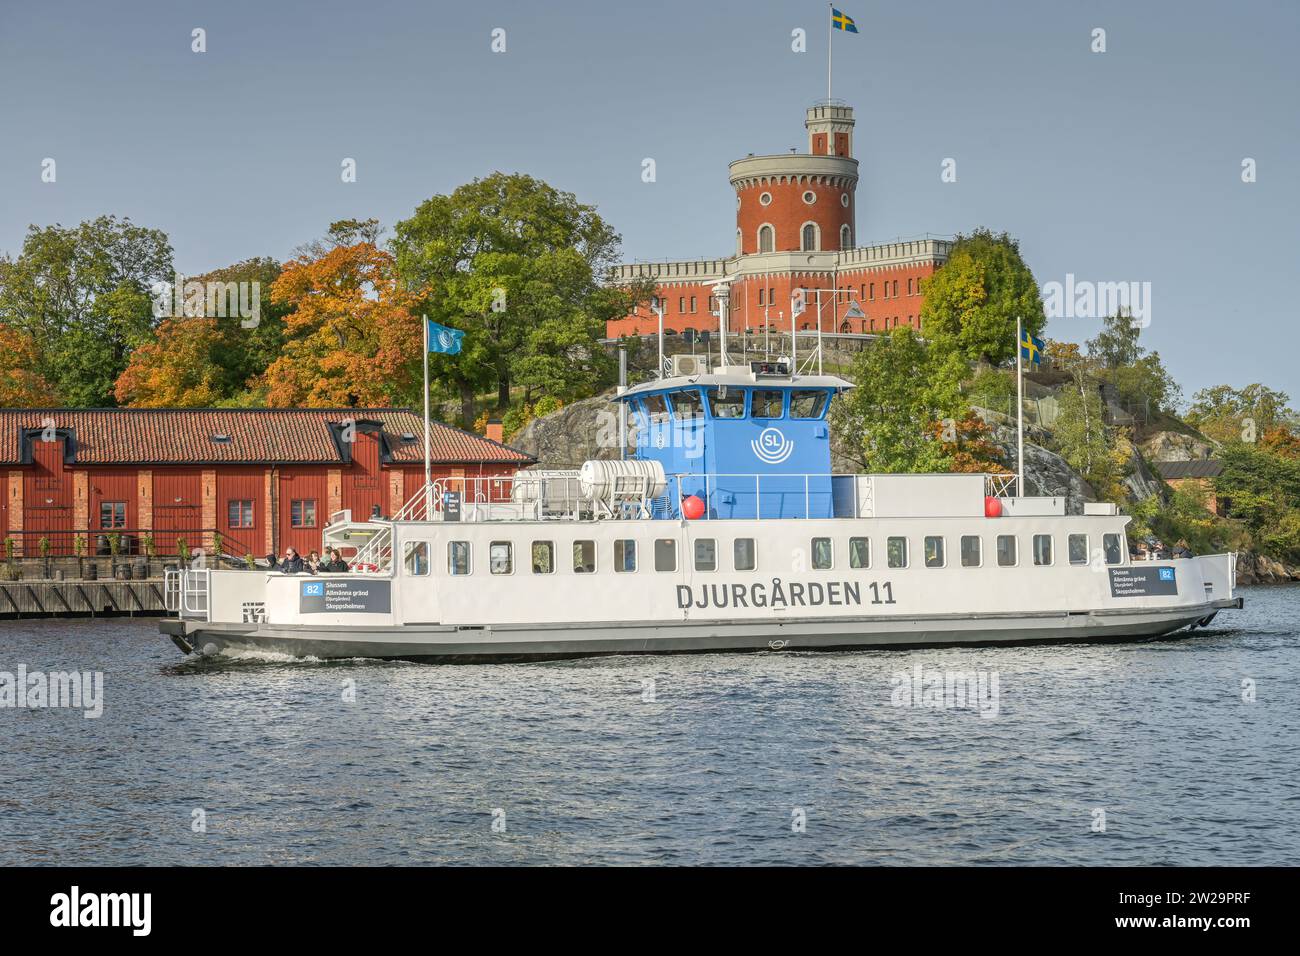 Fährschiff Djurgarden 11, Kastellet, Insel Kastellholmen, Stockholm, Schweden Stock Photo